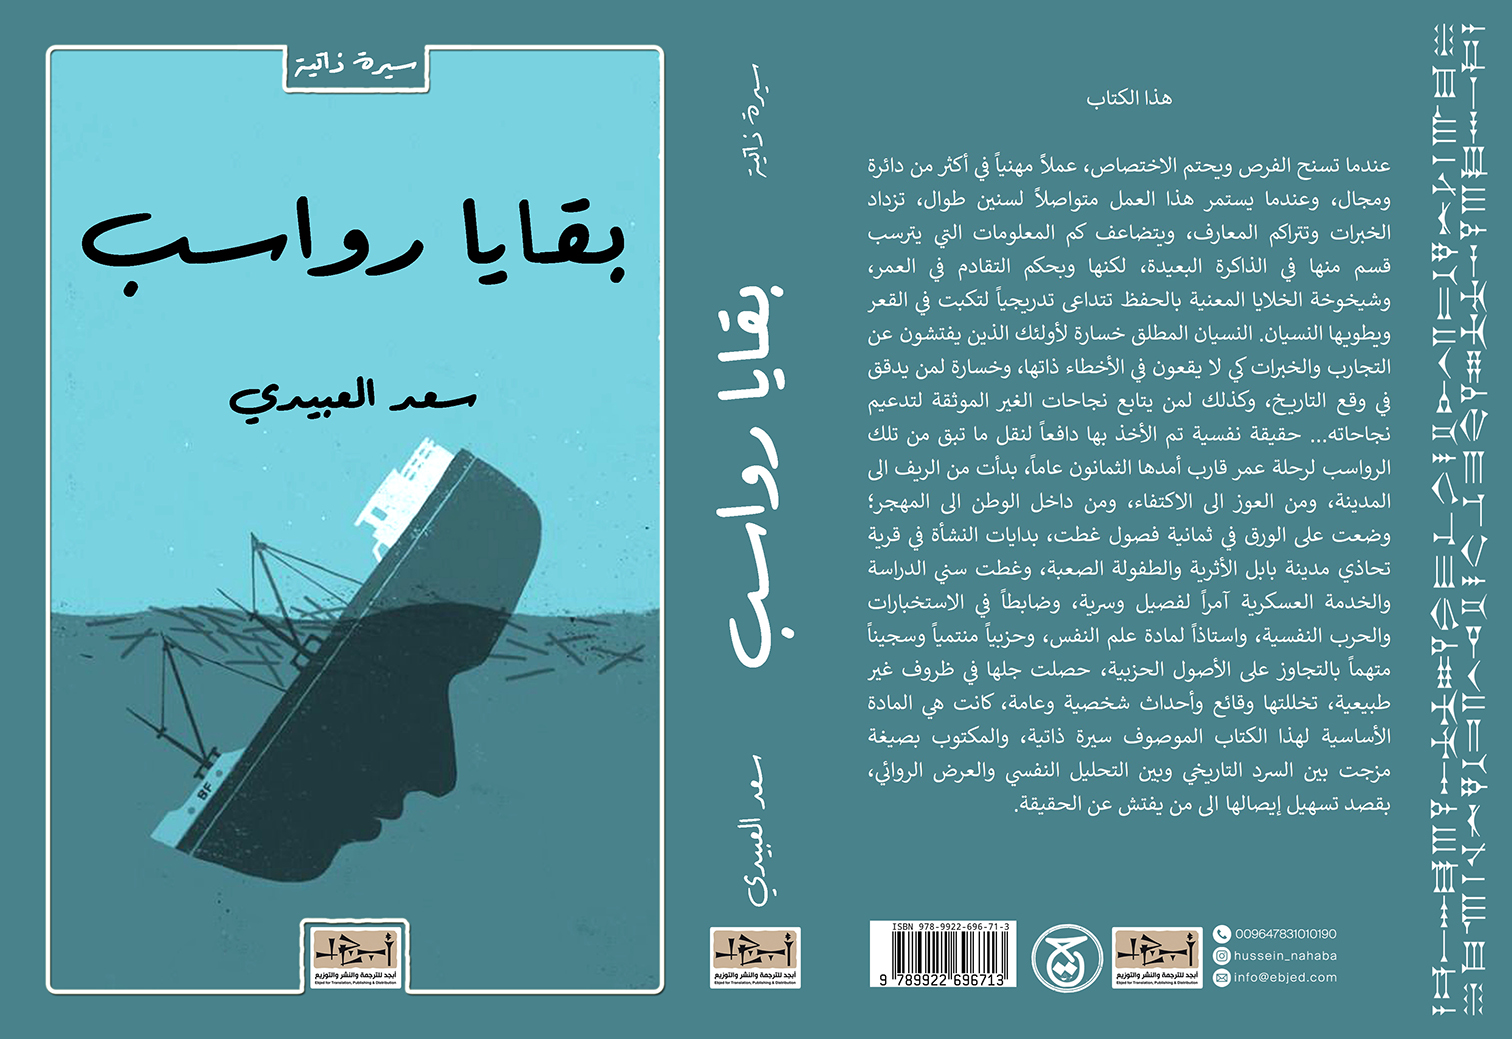 عنوان الكتاب: بقايا رواسب تأليف: سعد العبيدي التصنيف: سيرة ذاتية